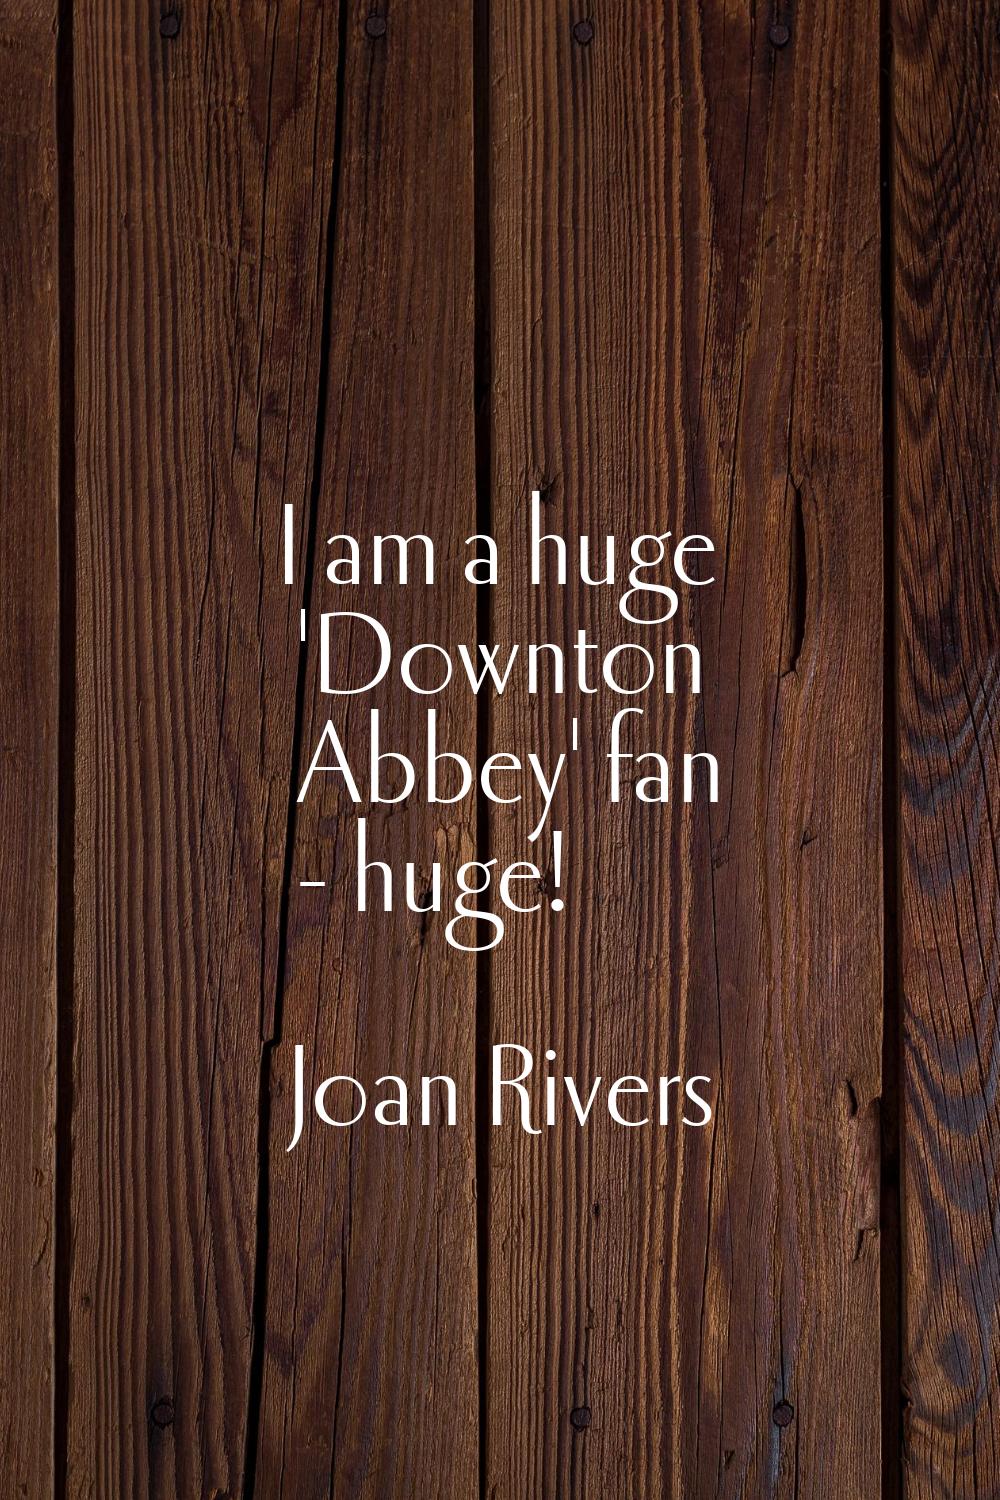 I am a huge 'Downton Abbey' fan - huge!